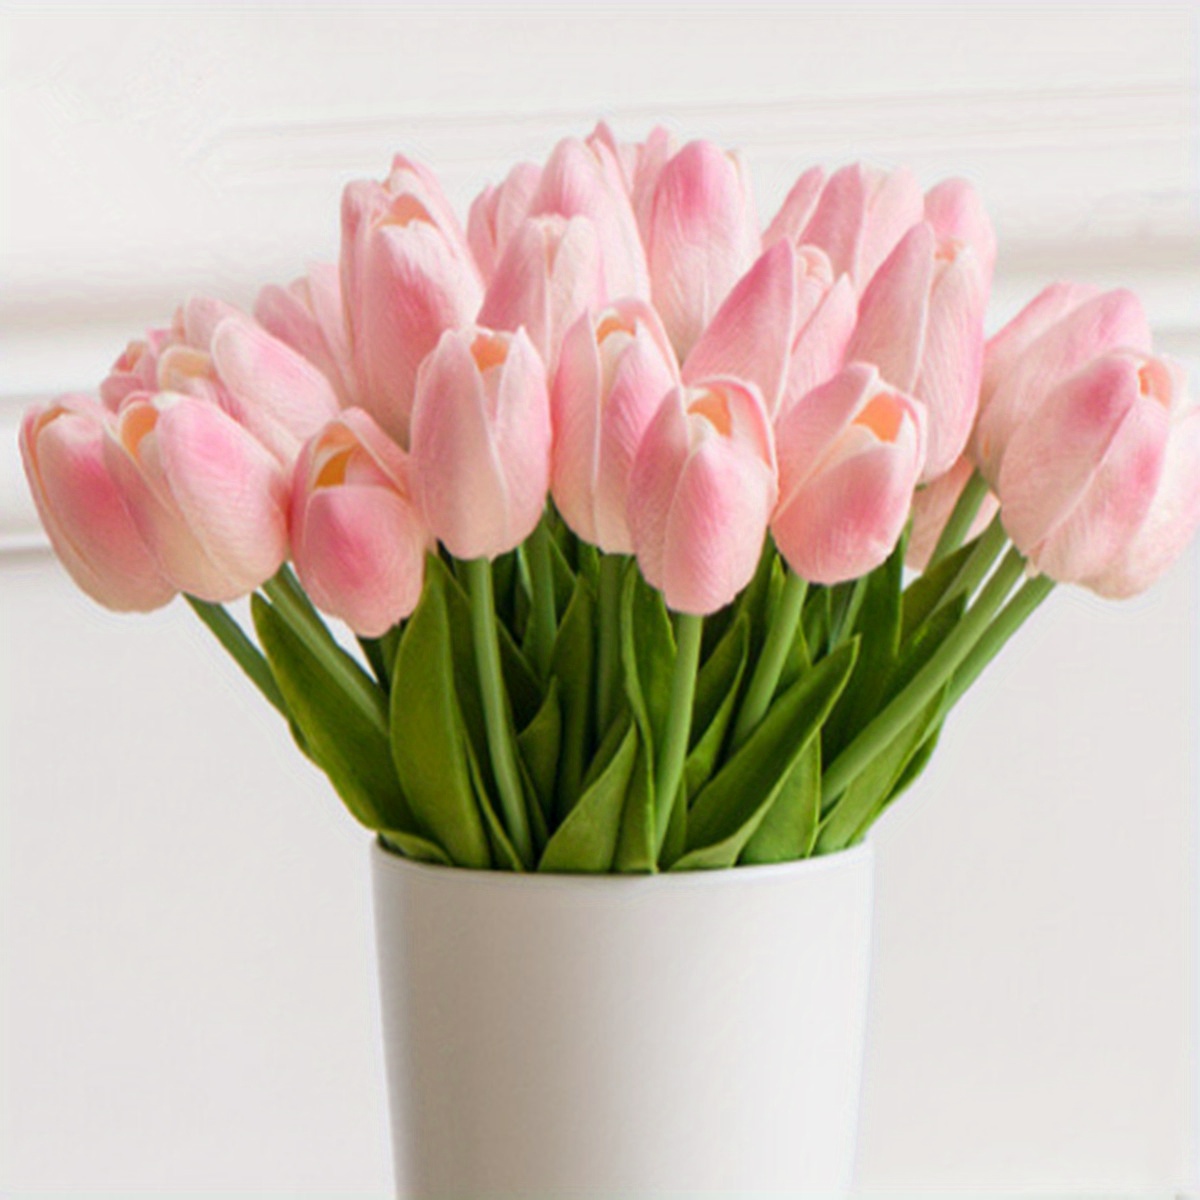  FiveSeasonStuff - Flores artificiales de tulipanes, se sientes  reales al tacto, ideales como ramo de boda, decoración del hogar, fiesta,  arreglos florales (15 tallos) : Todo lo demás